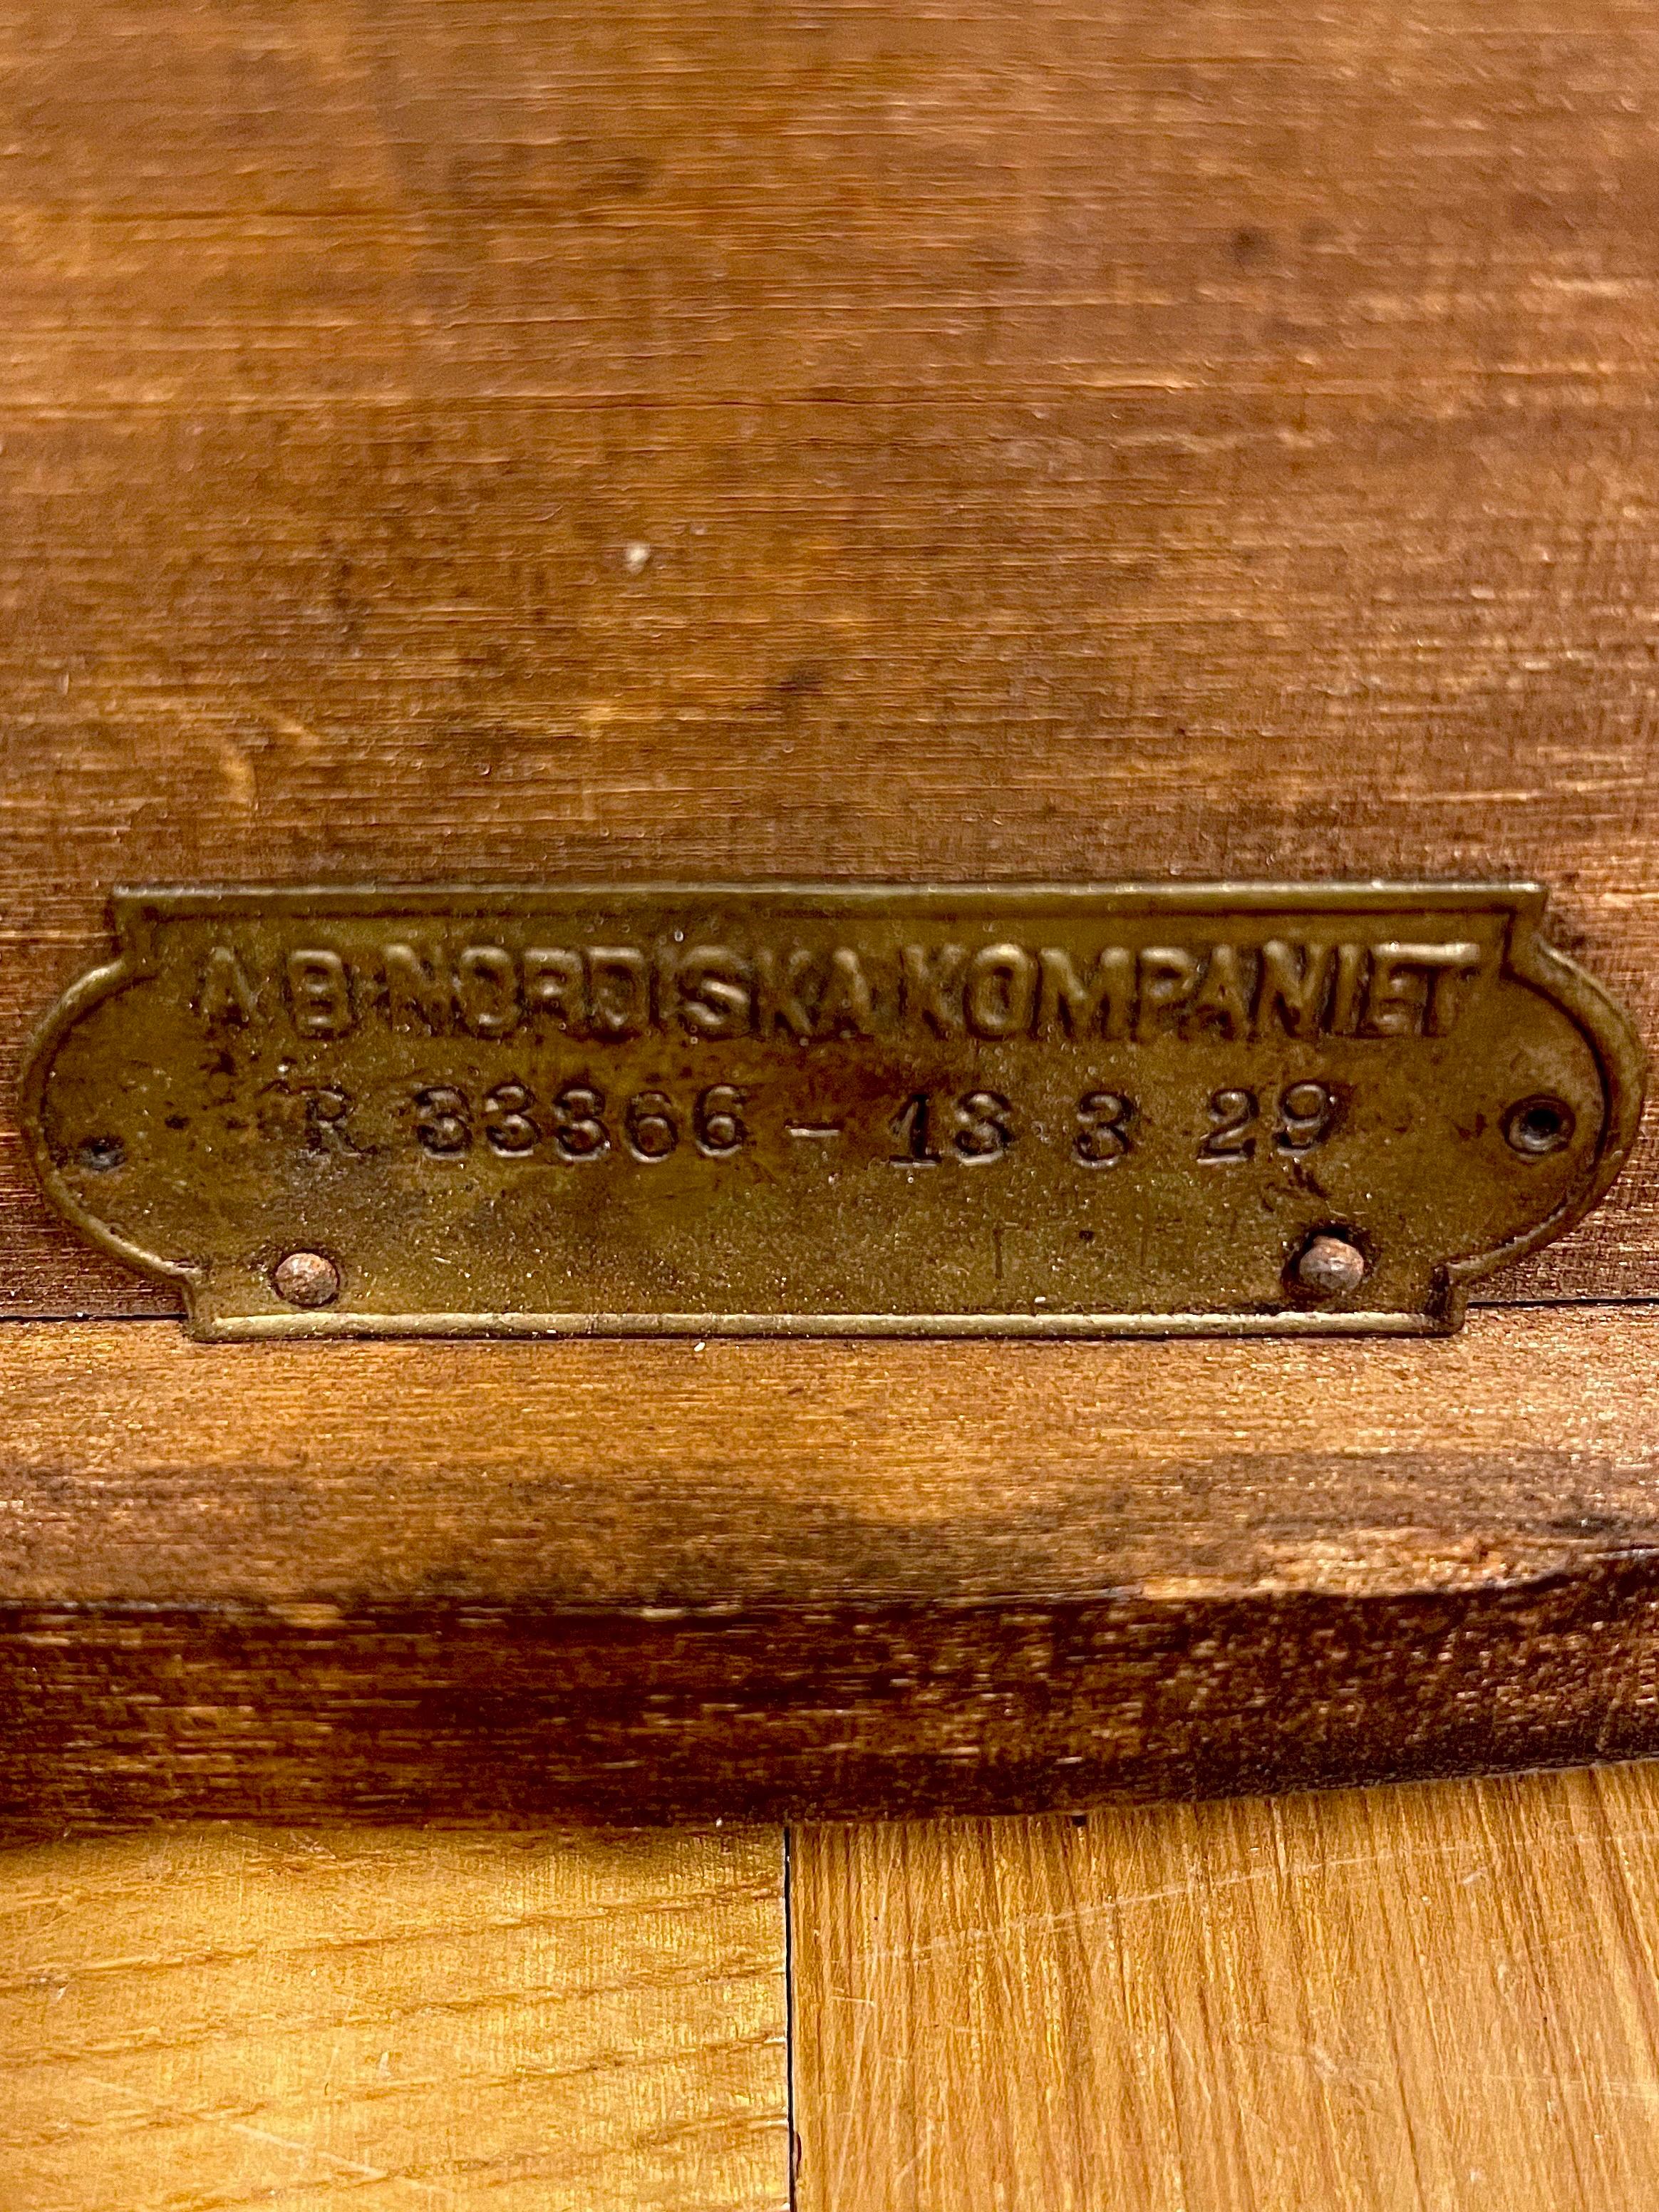 Il s'agit d'une table à plateau suédoise des années 1930 de NK, Nordiska Kompaniet. 
Il se présente sous la forme d'un bouleau teinté d'un brun foncé profond, avec une belle patine d'âge et d'utilisation. 

Cette table particulière a été conçue en